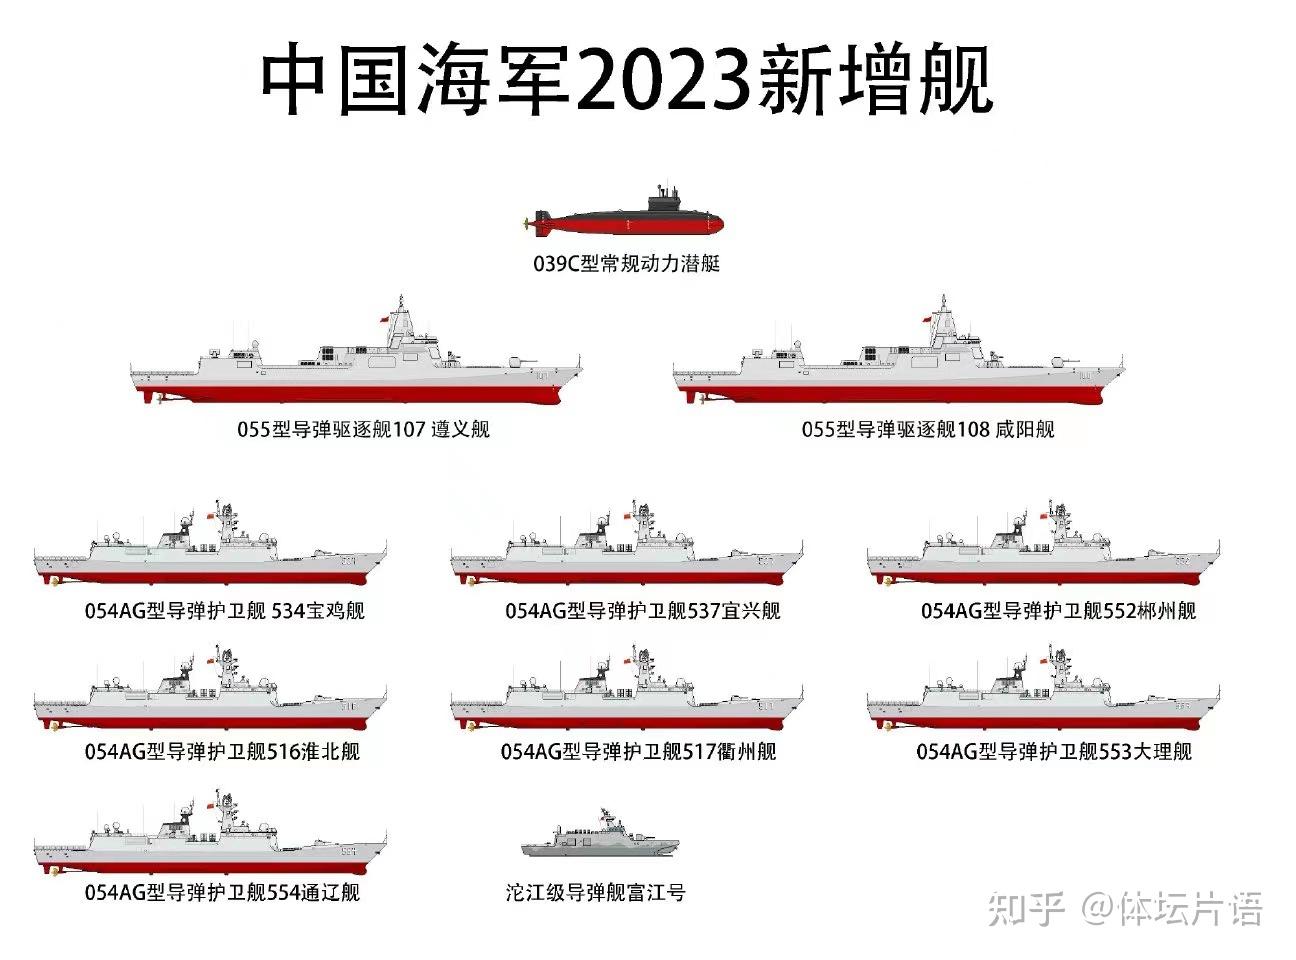 中美海军差距,2000年仰望,2012年转折,2023年惊叹,胜在未来!